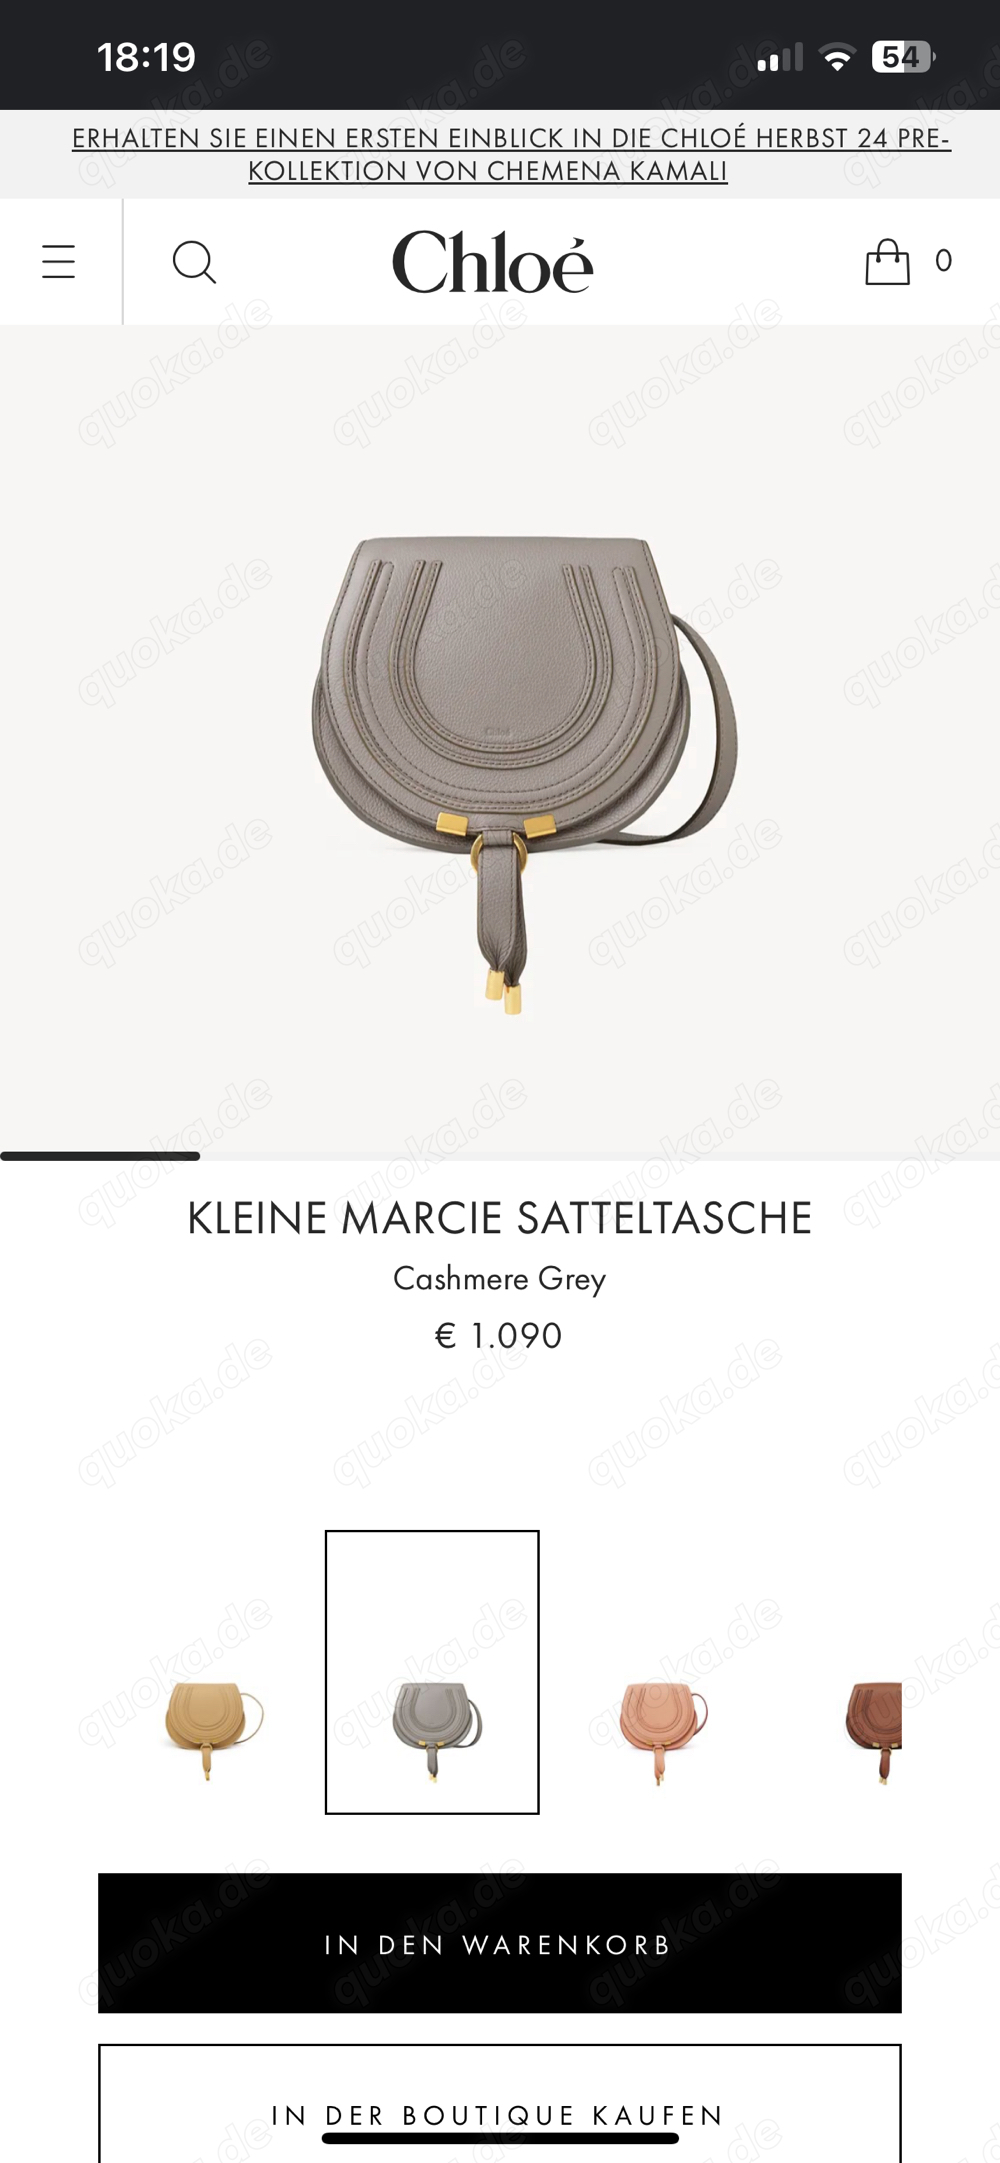 CHLOE KLEINE MARCIE SATTELTASCHE Cashmere Grey